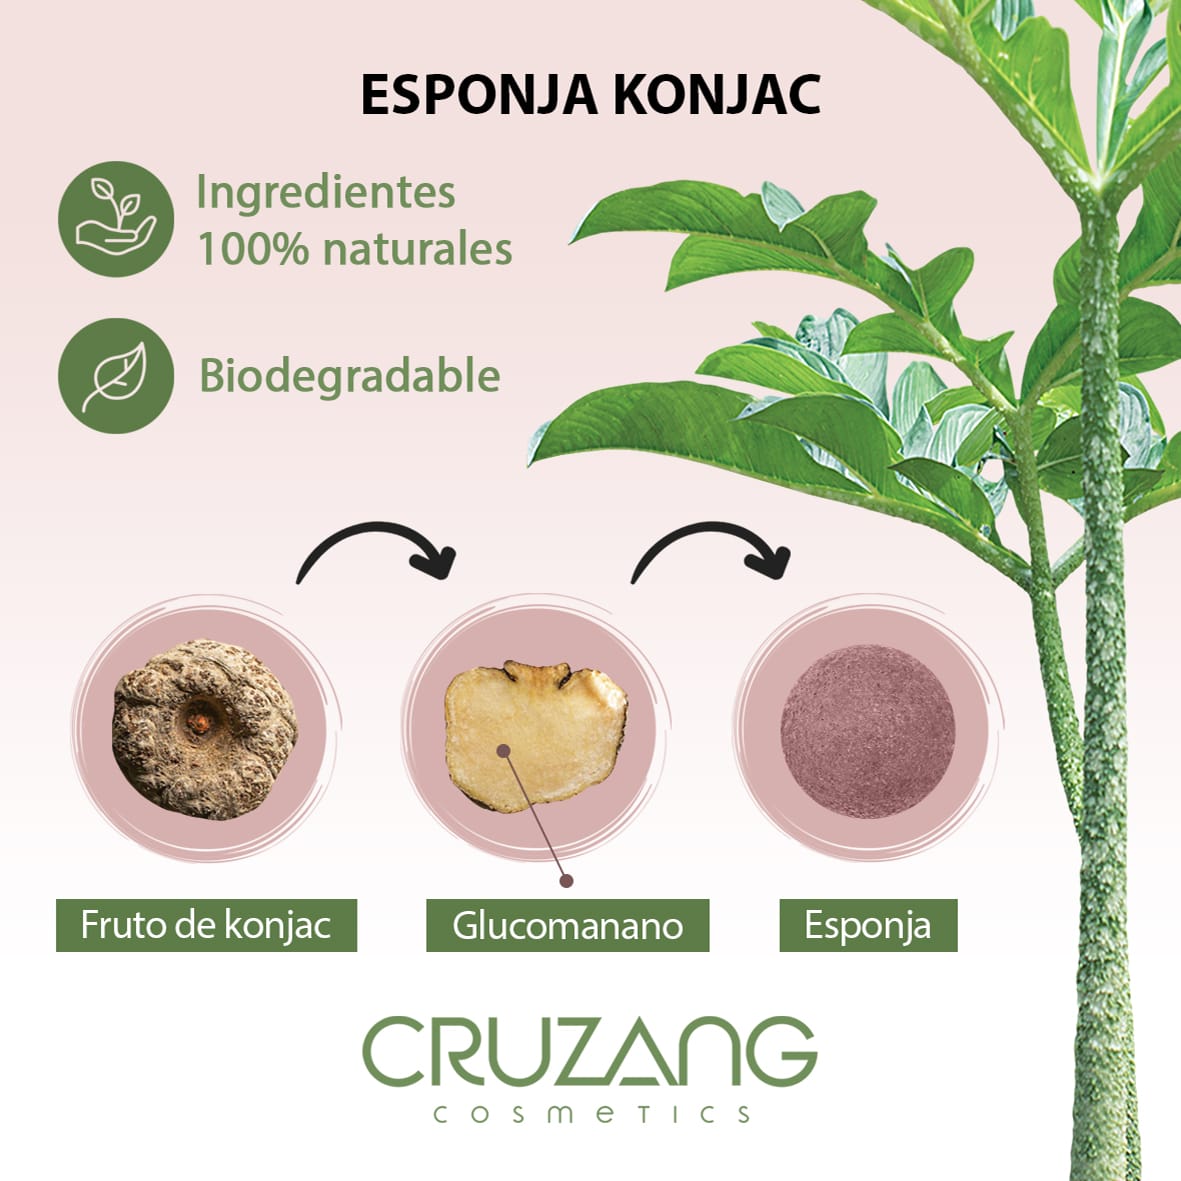 La esponjas Konjac son de origen 100% naturales y biodegradables.